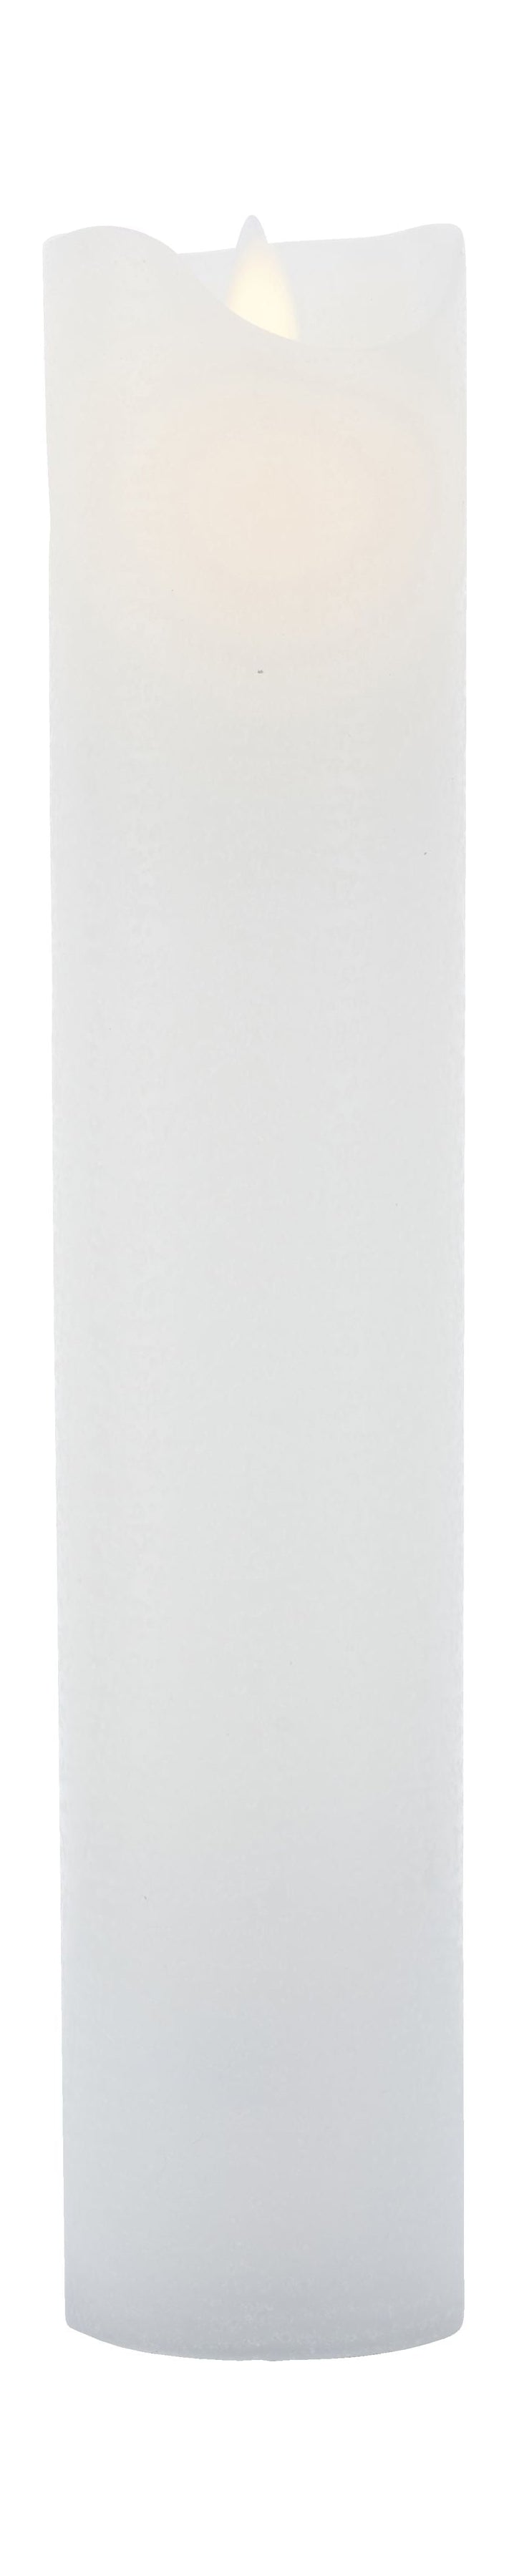 Sirius Sara ladattava LED -kynttilä valkoinen, Ø7,5x H30cm